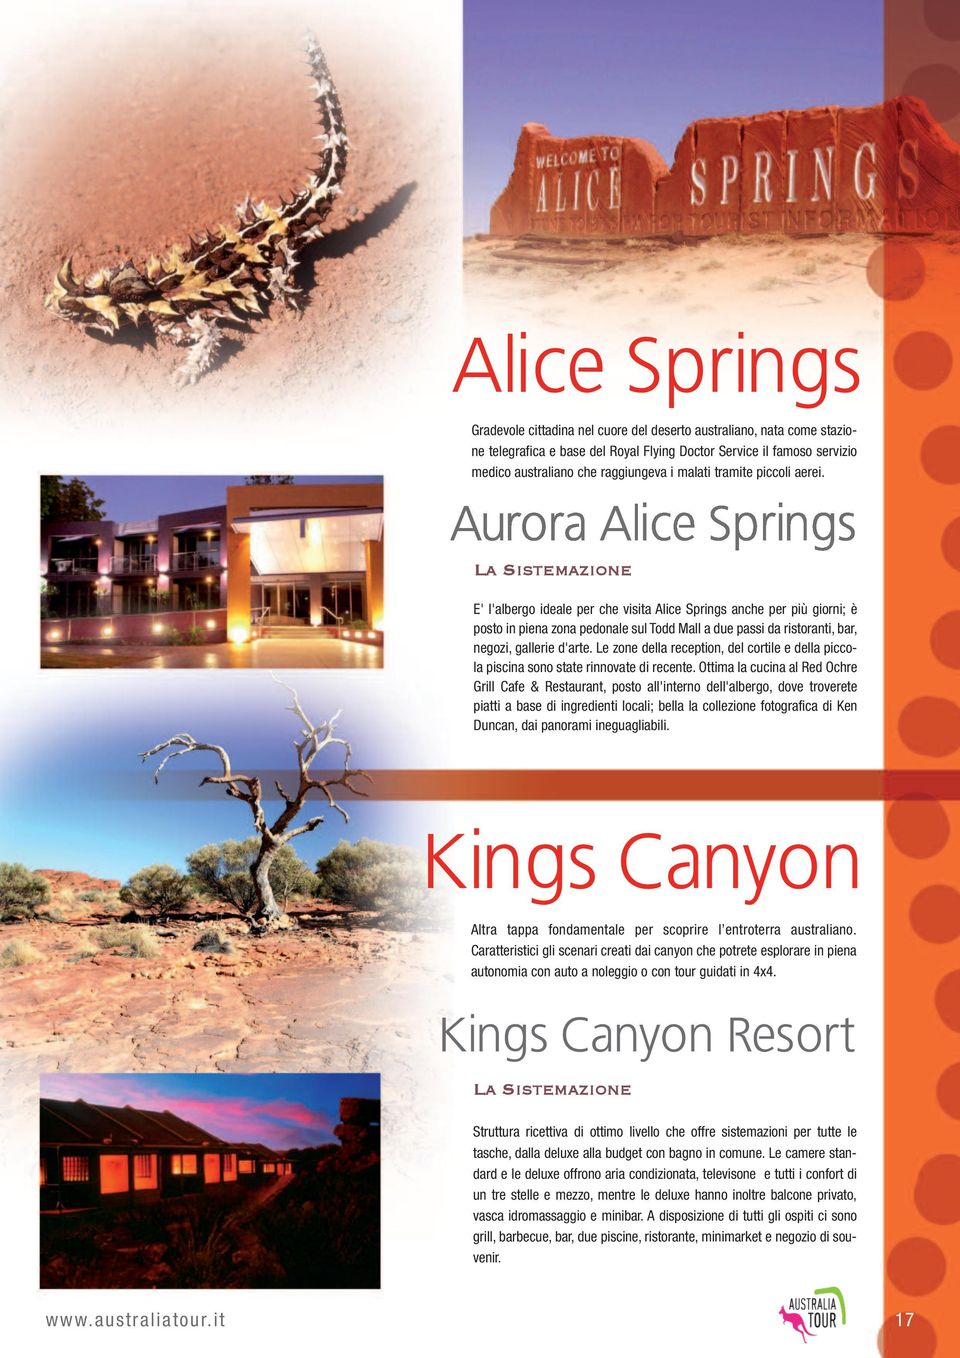 La Sistemazione E' l'albergo ideale per che visita Alice Springs anche per più giorni; è posto in piena zona pedonale sul Todd Mall a due passi da ristoranti, bar, negozi, gallerie d'arte.